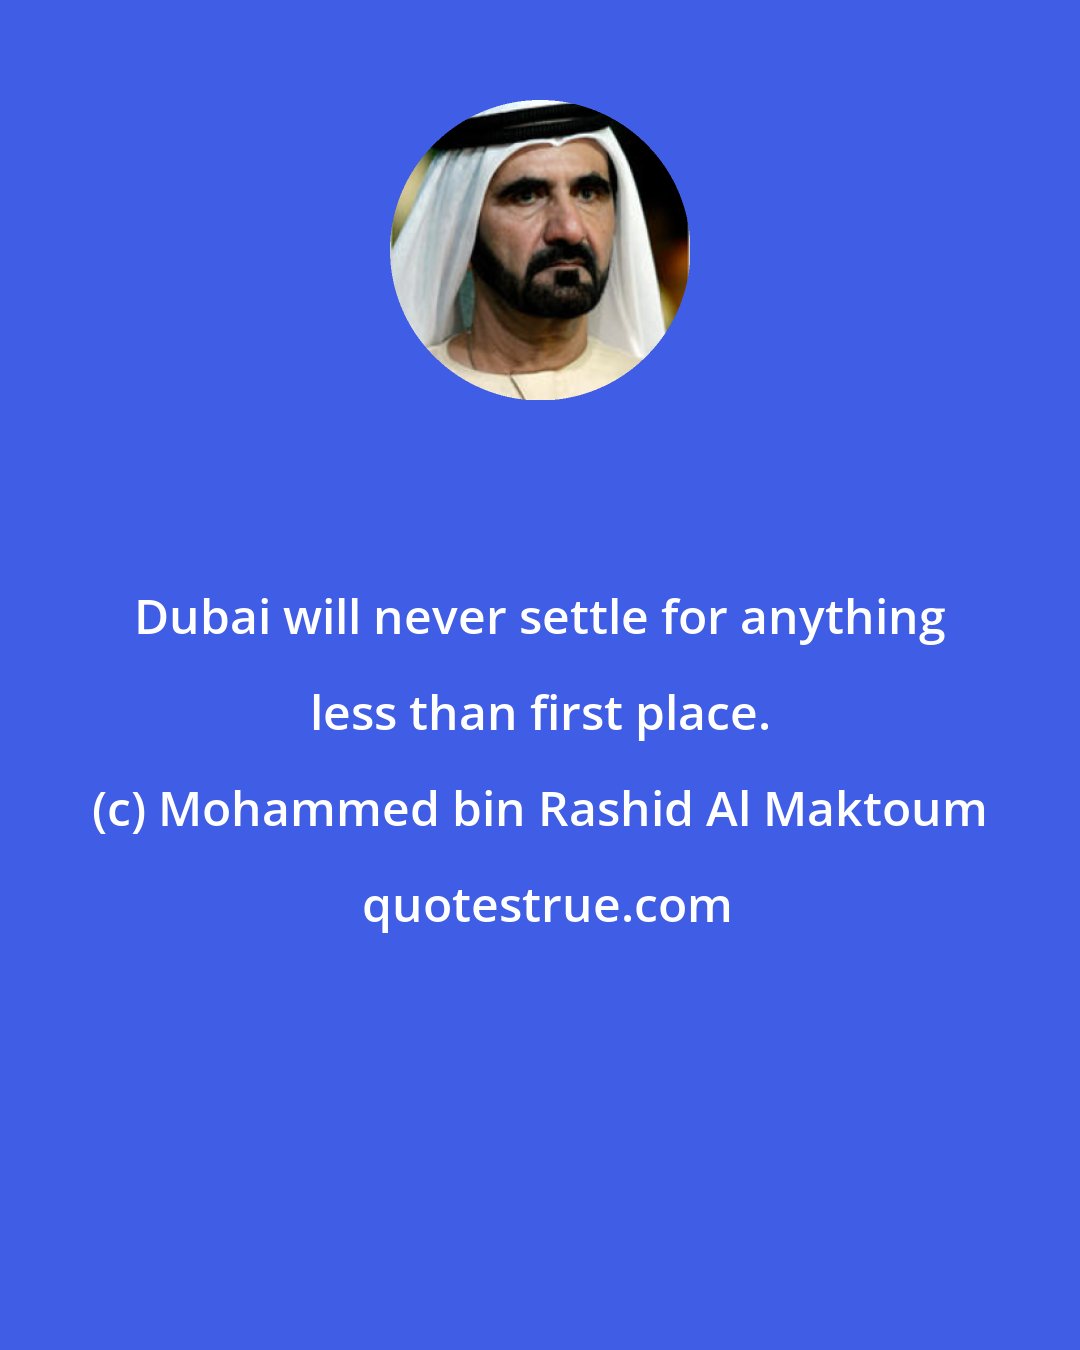 Mohammed bin Rashid Al Maktoum: Dubai will never settle for anything less than first place.